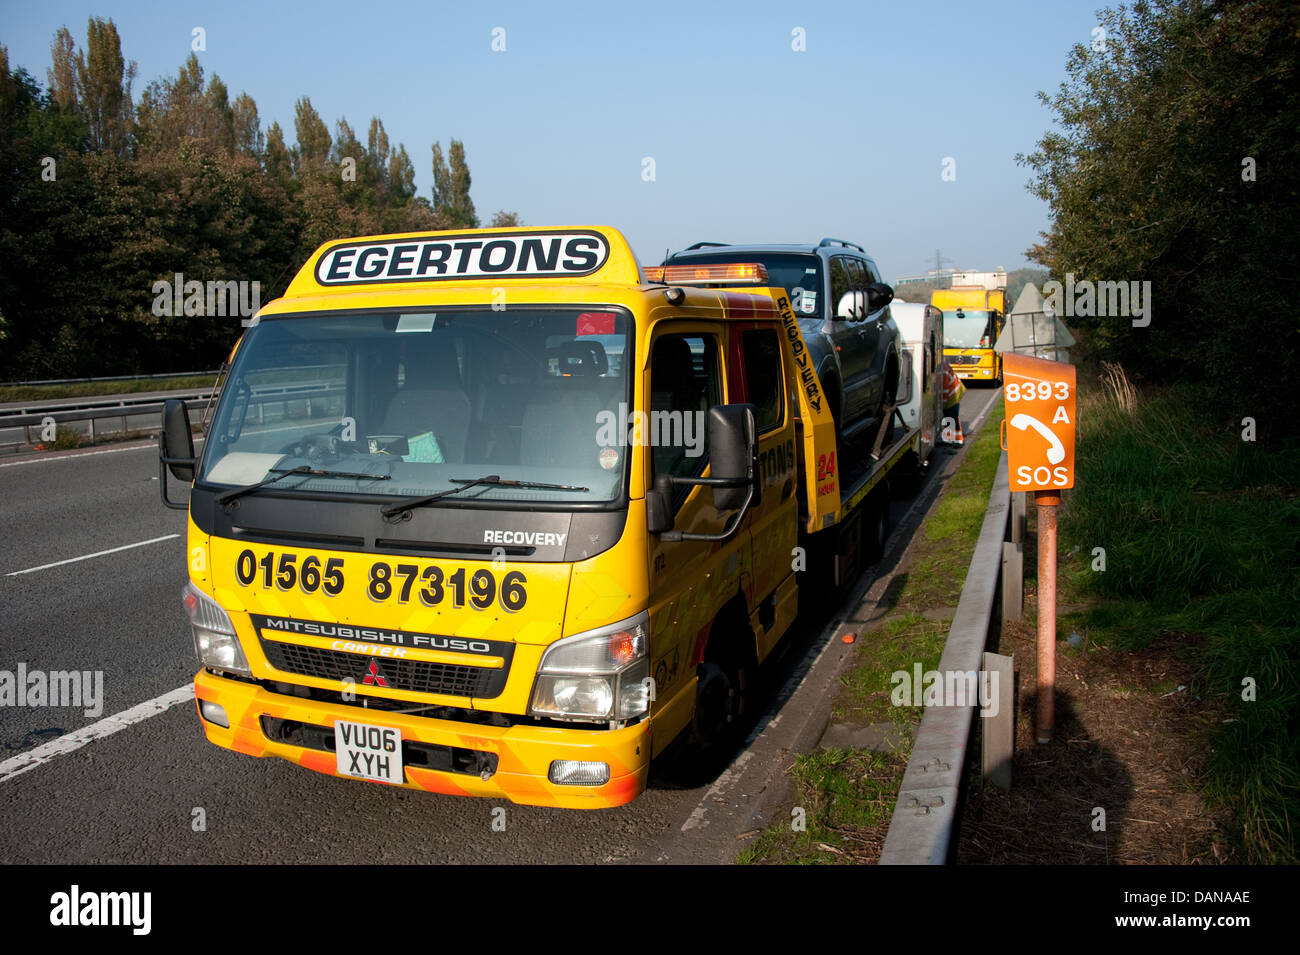 Egertons Motorway breakdown rescue truck UK Stock Photo